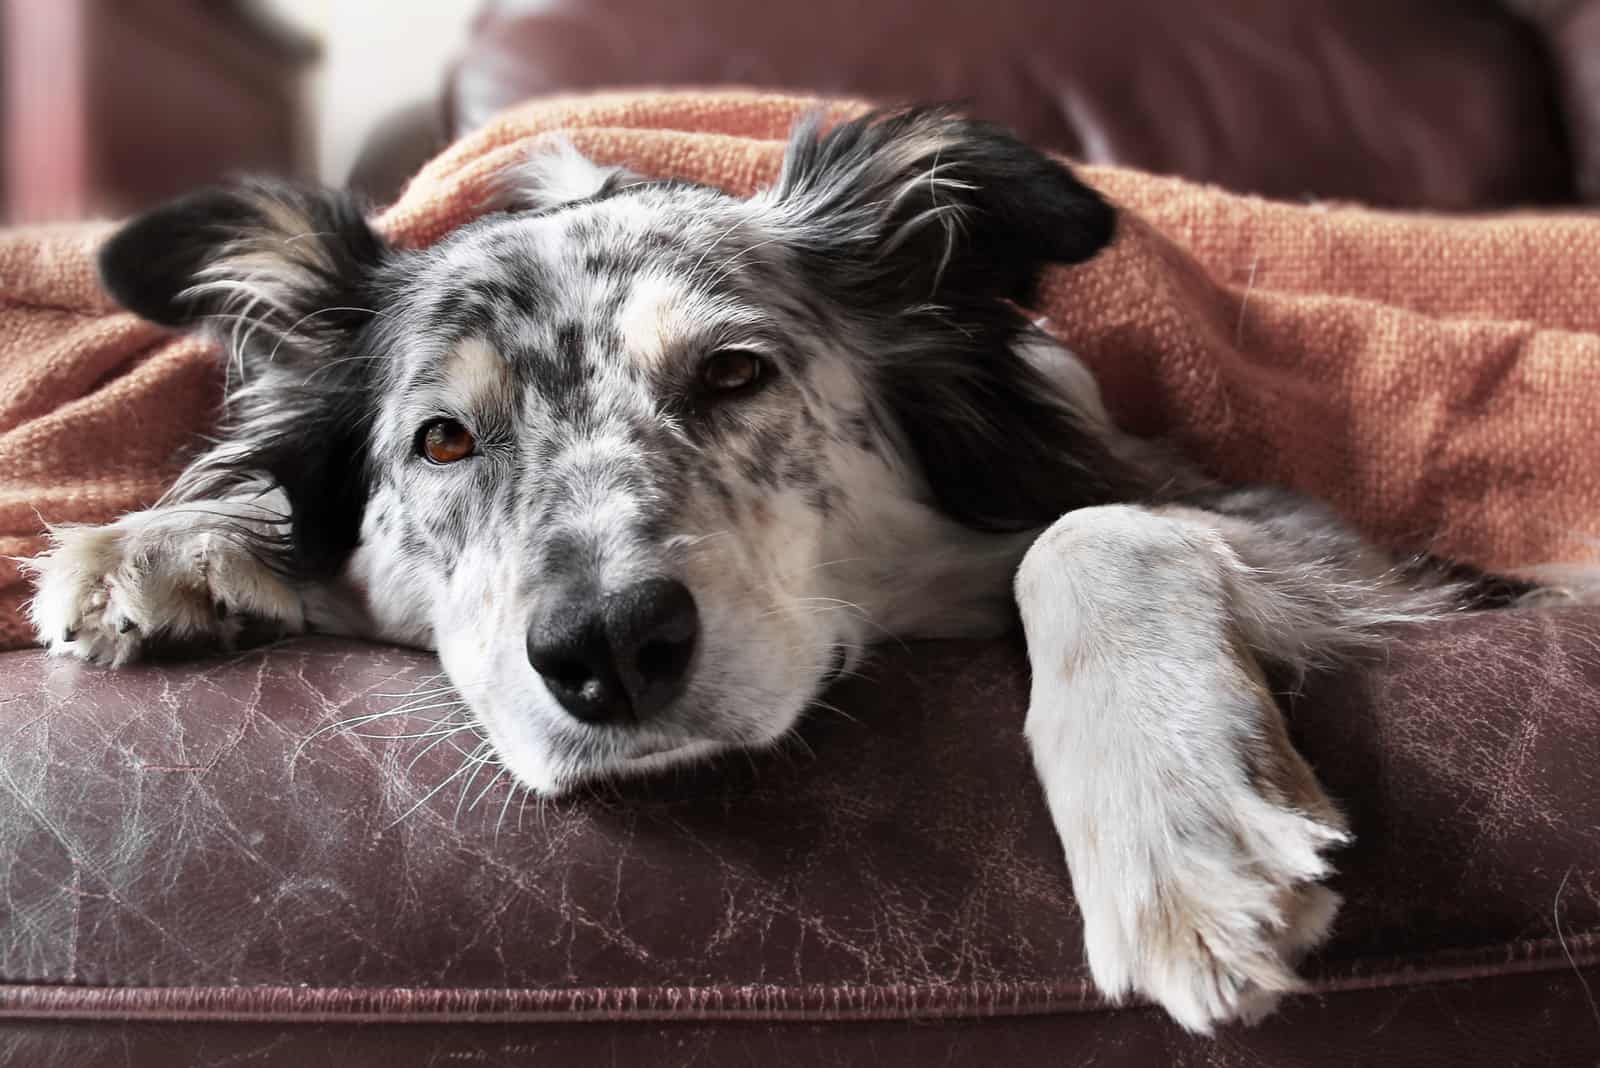 australischer Schäferhund auf der Couch unter der Decke, die traurig schaut